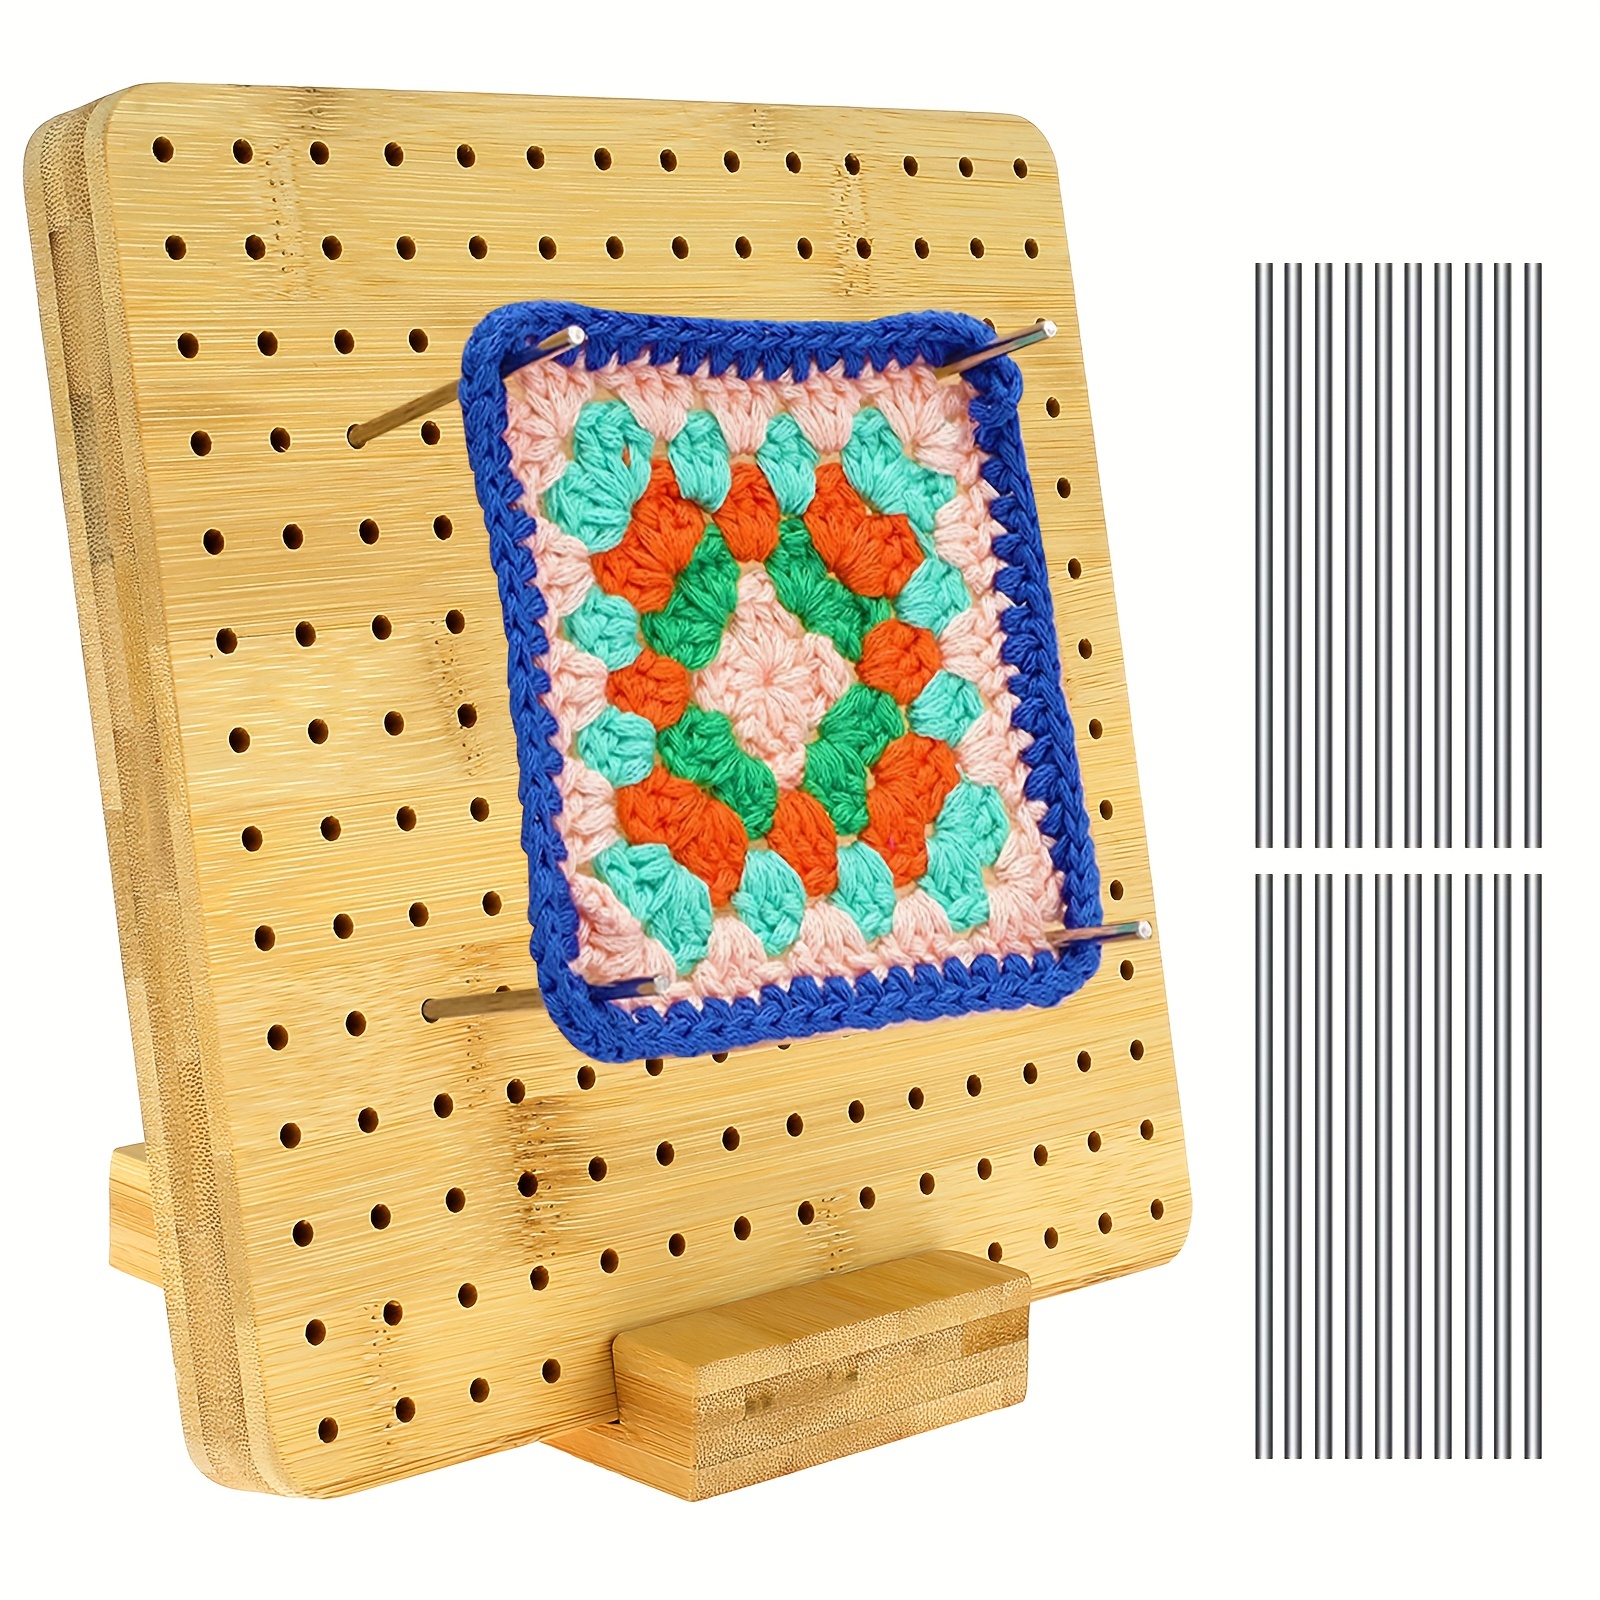 9.3Inch Crochet Blocking Board Wooden Knitting Blocking Board Reusable  Granny Square Blocking Board for Beginner Knitting Lover